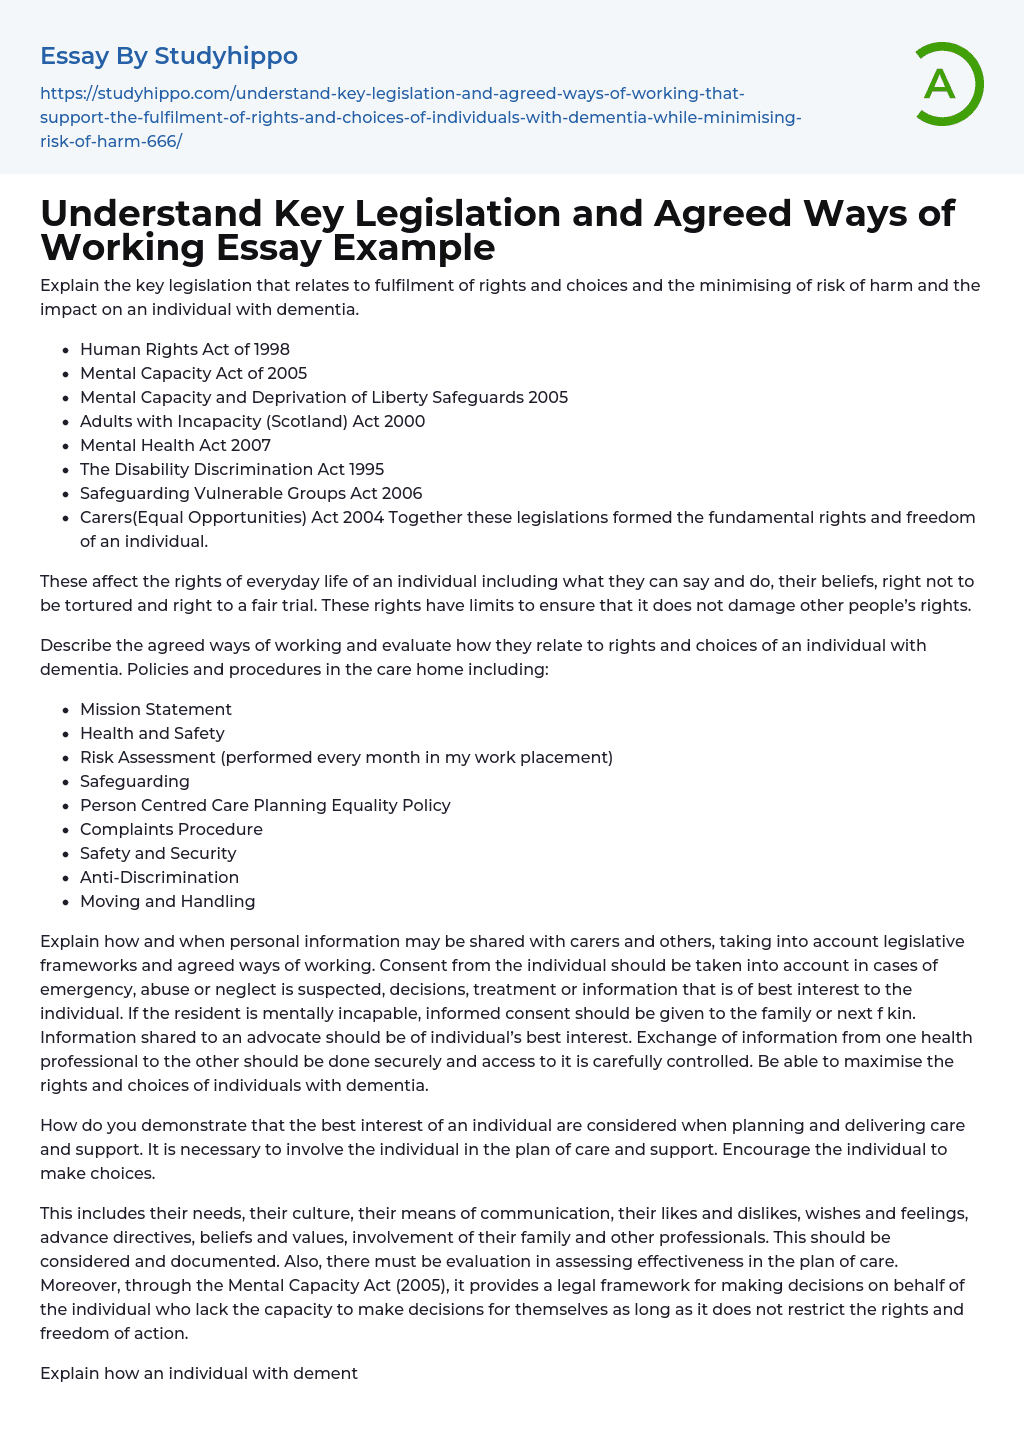 social work legislation essay